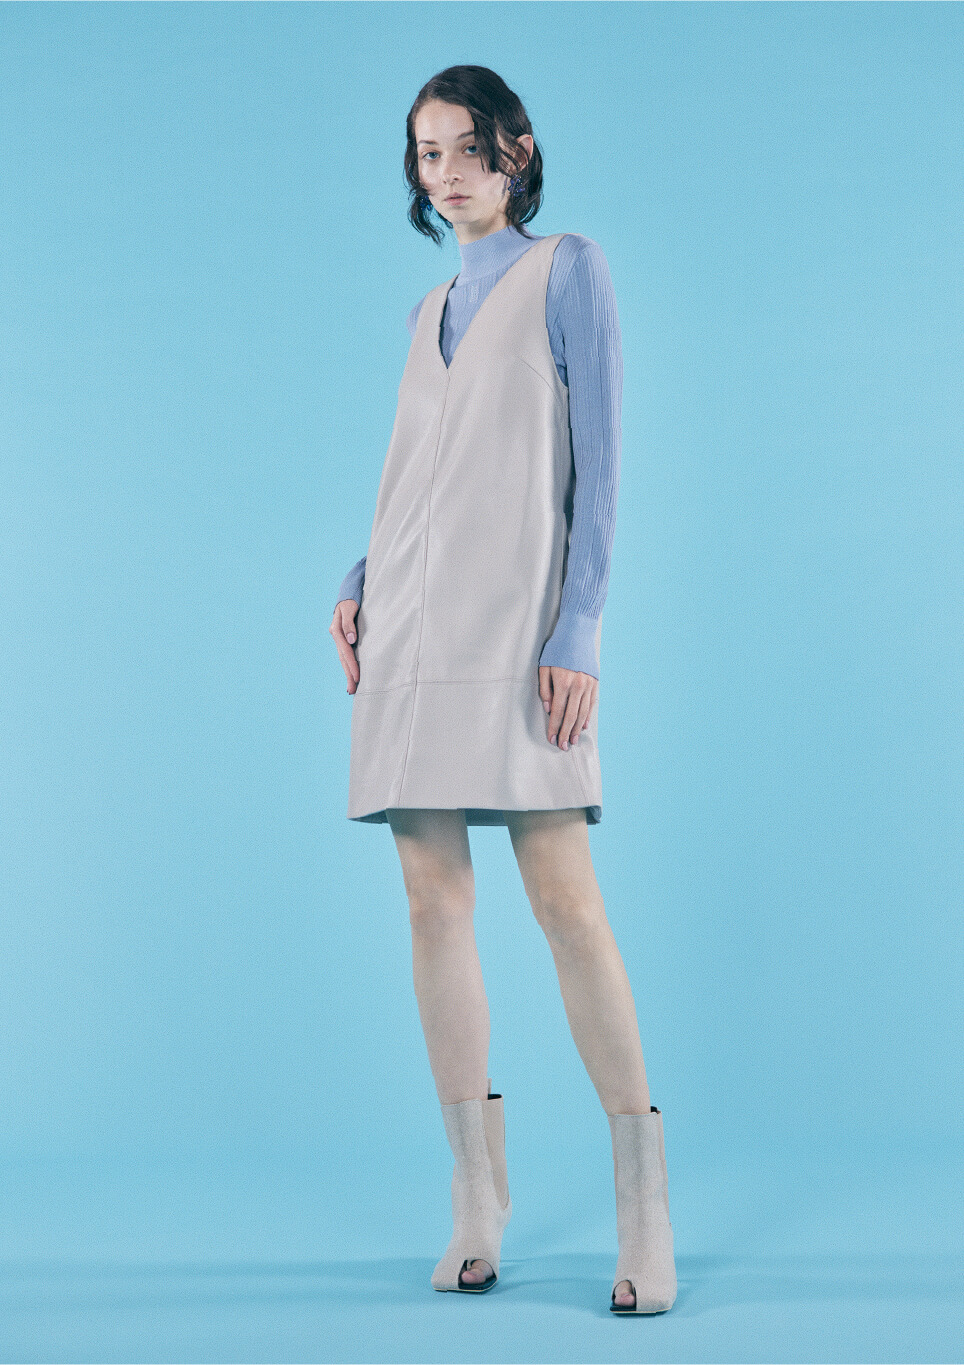 青色のタートルネックと白いドレスを着て立っている女性モデルの画像